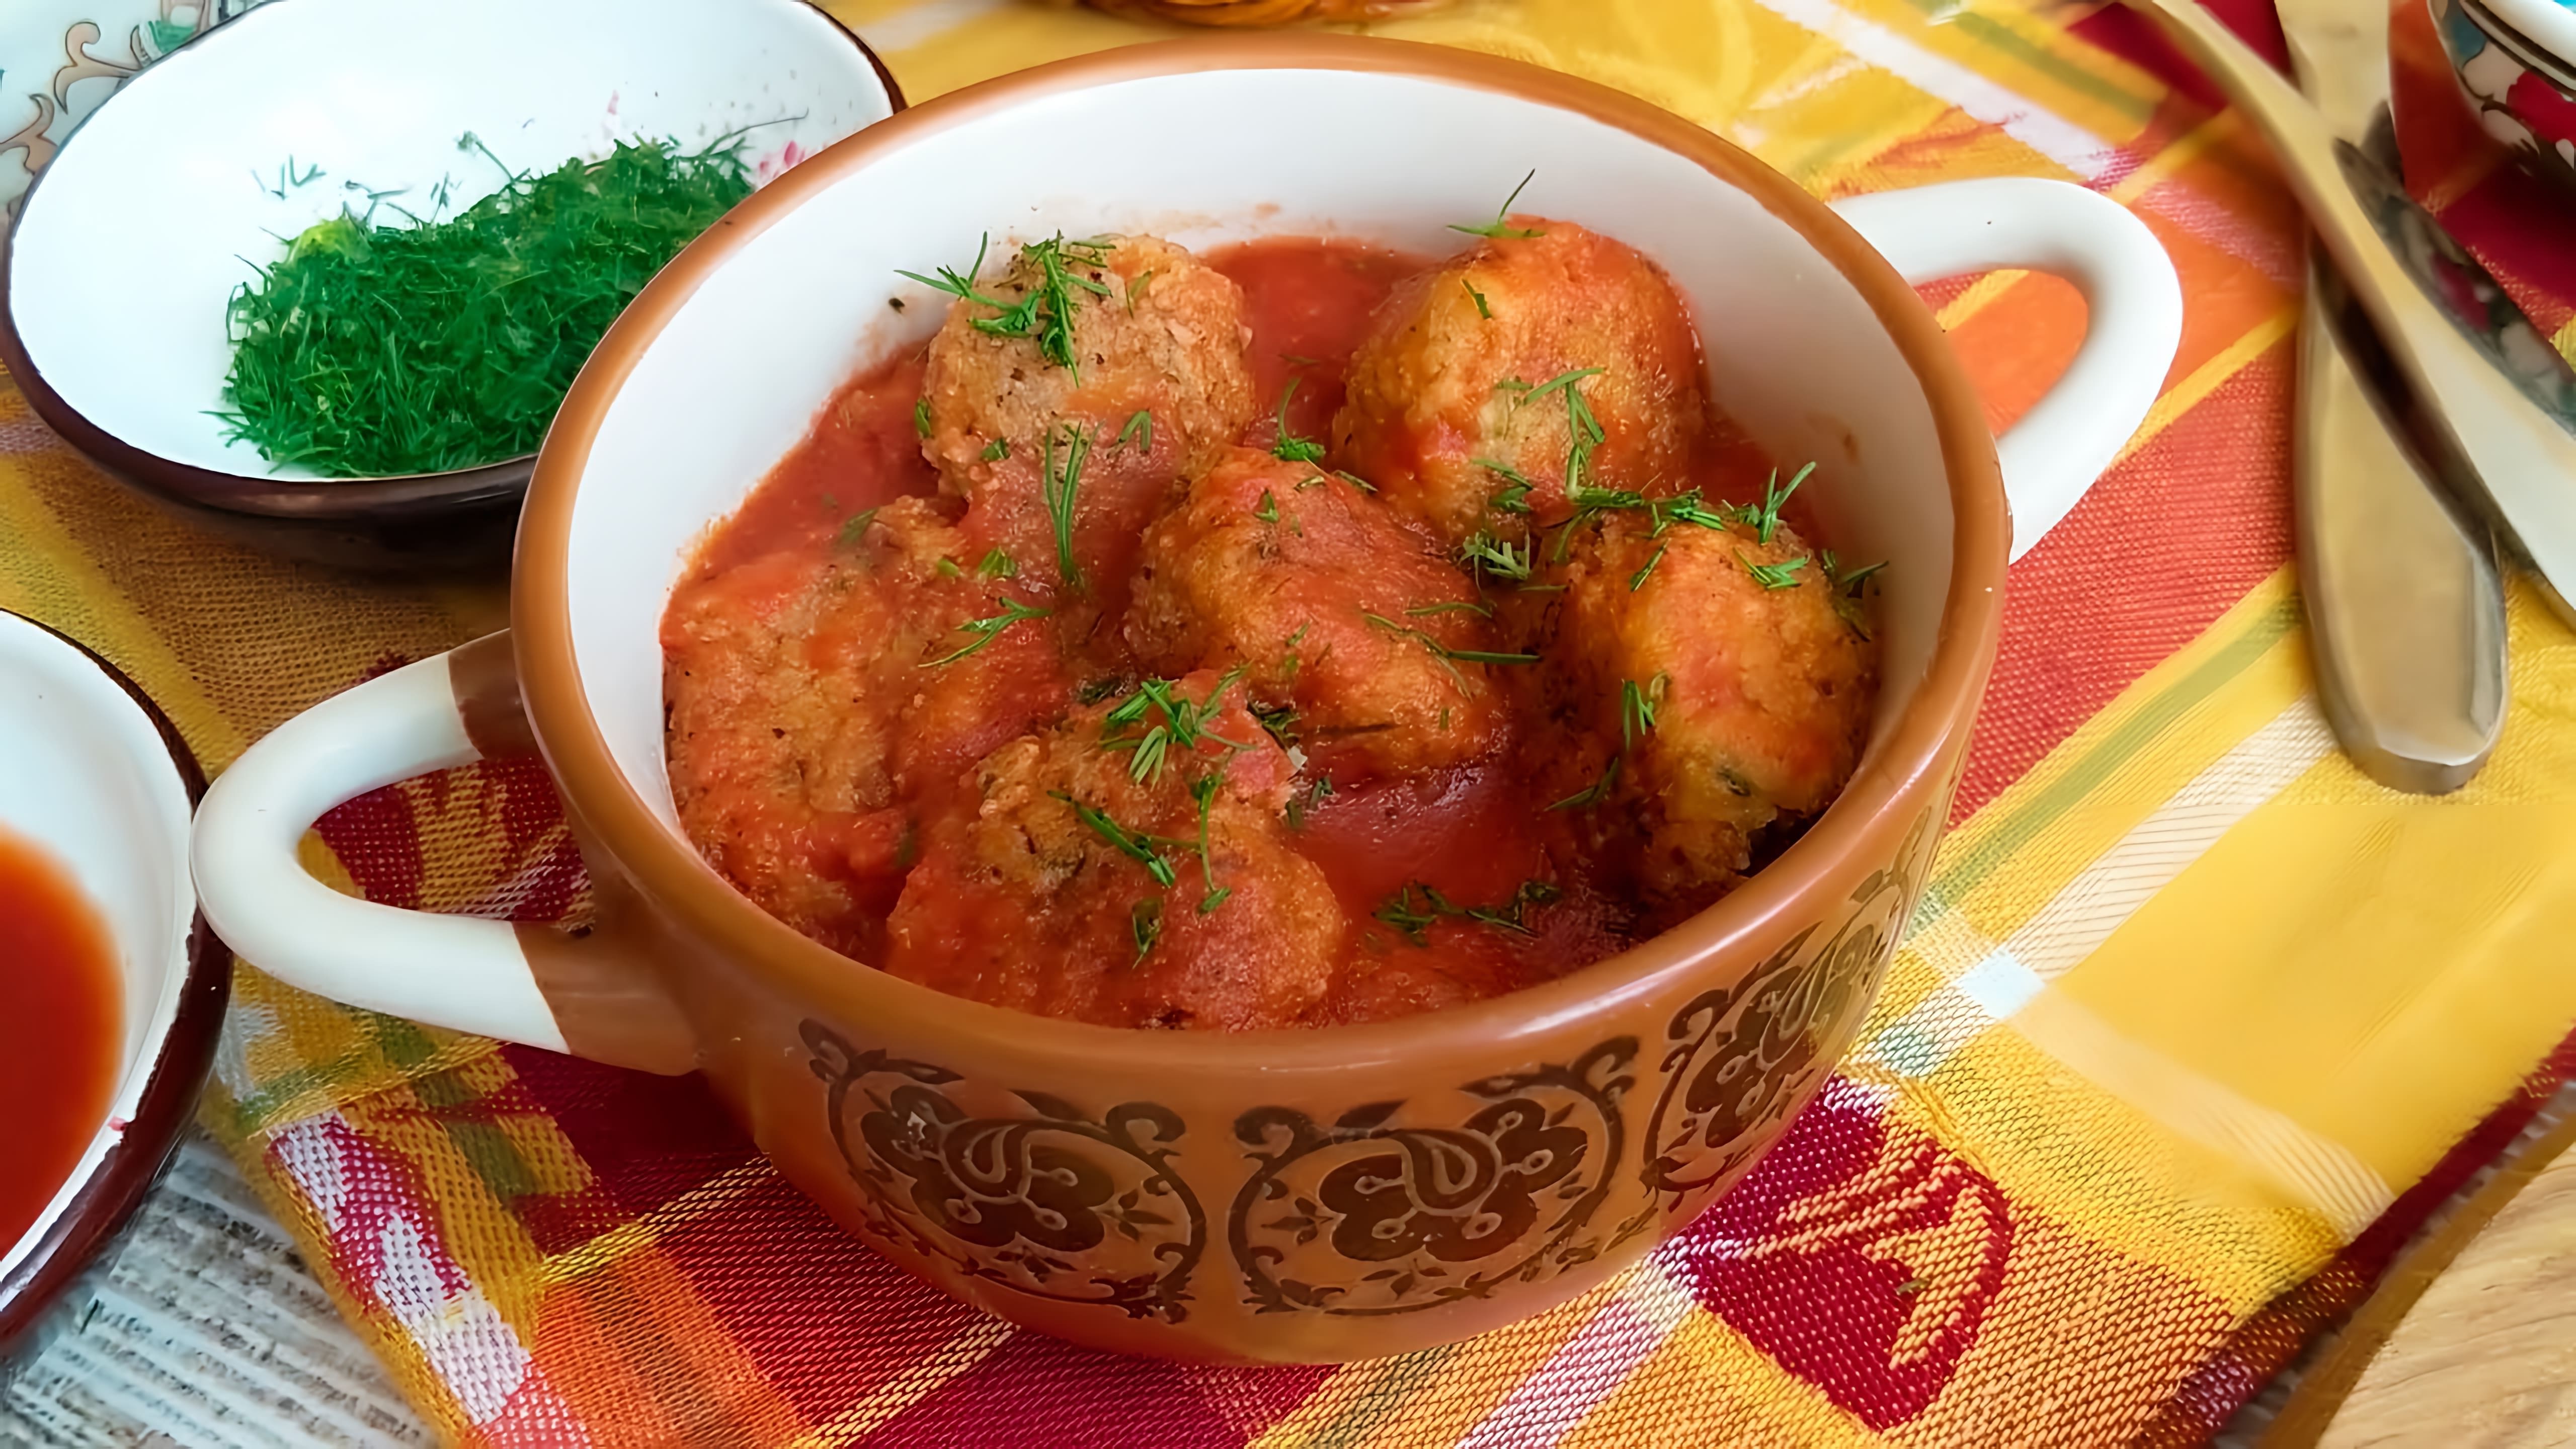 В этом видео демонстрируется рецепт приготовления овощных шариков в томатном соусе, которые являются вегетарианским блюдом индийской кухни